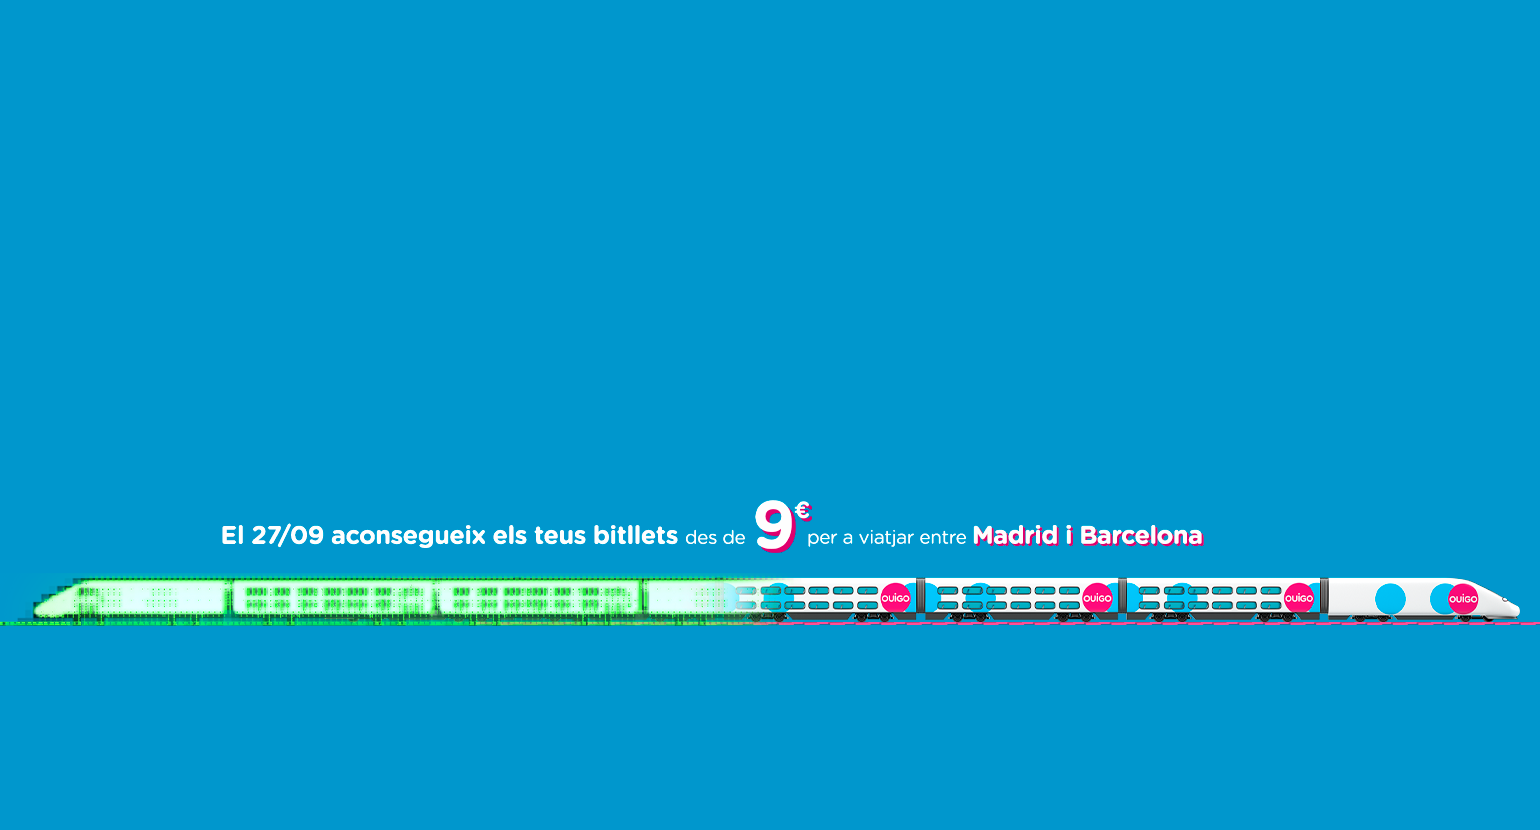 compra j els teuts bitllets des de 9 euros per a viatjar entre Madrid i Barcelona